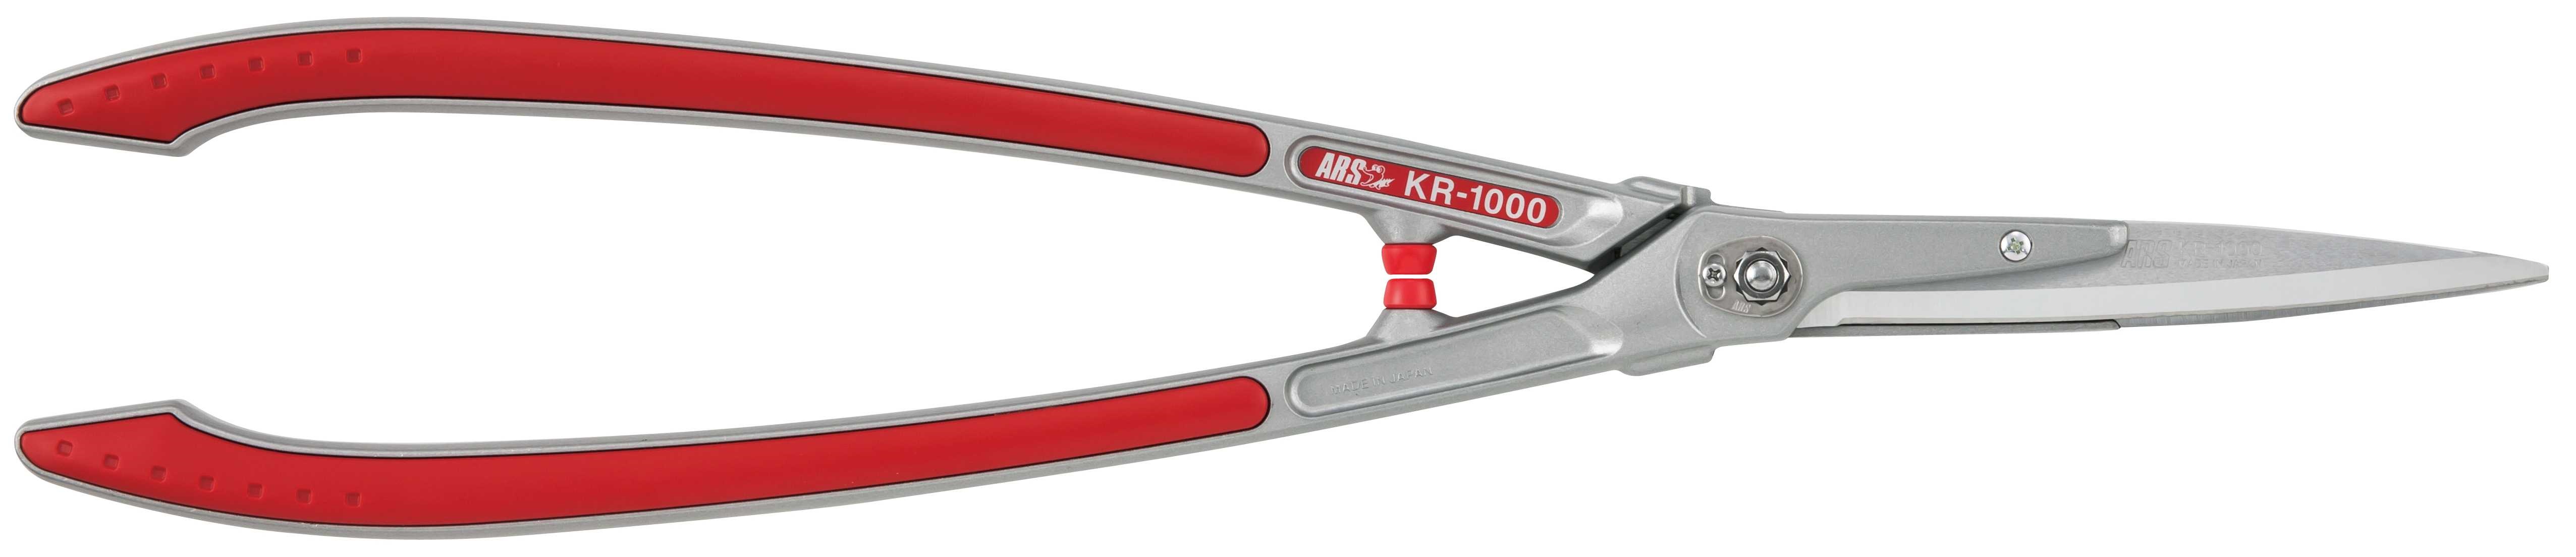 ARS - Heckenschere - 65 cm - KR-1000 - rot